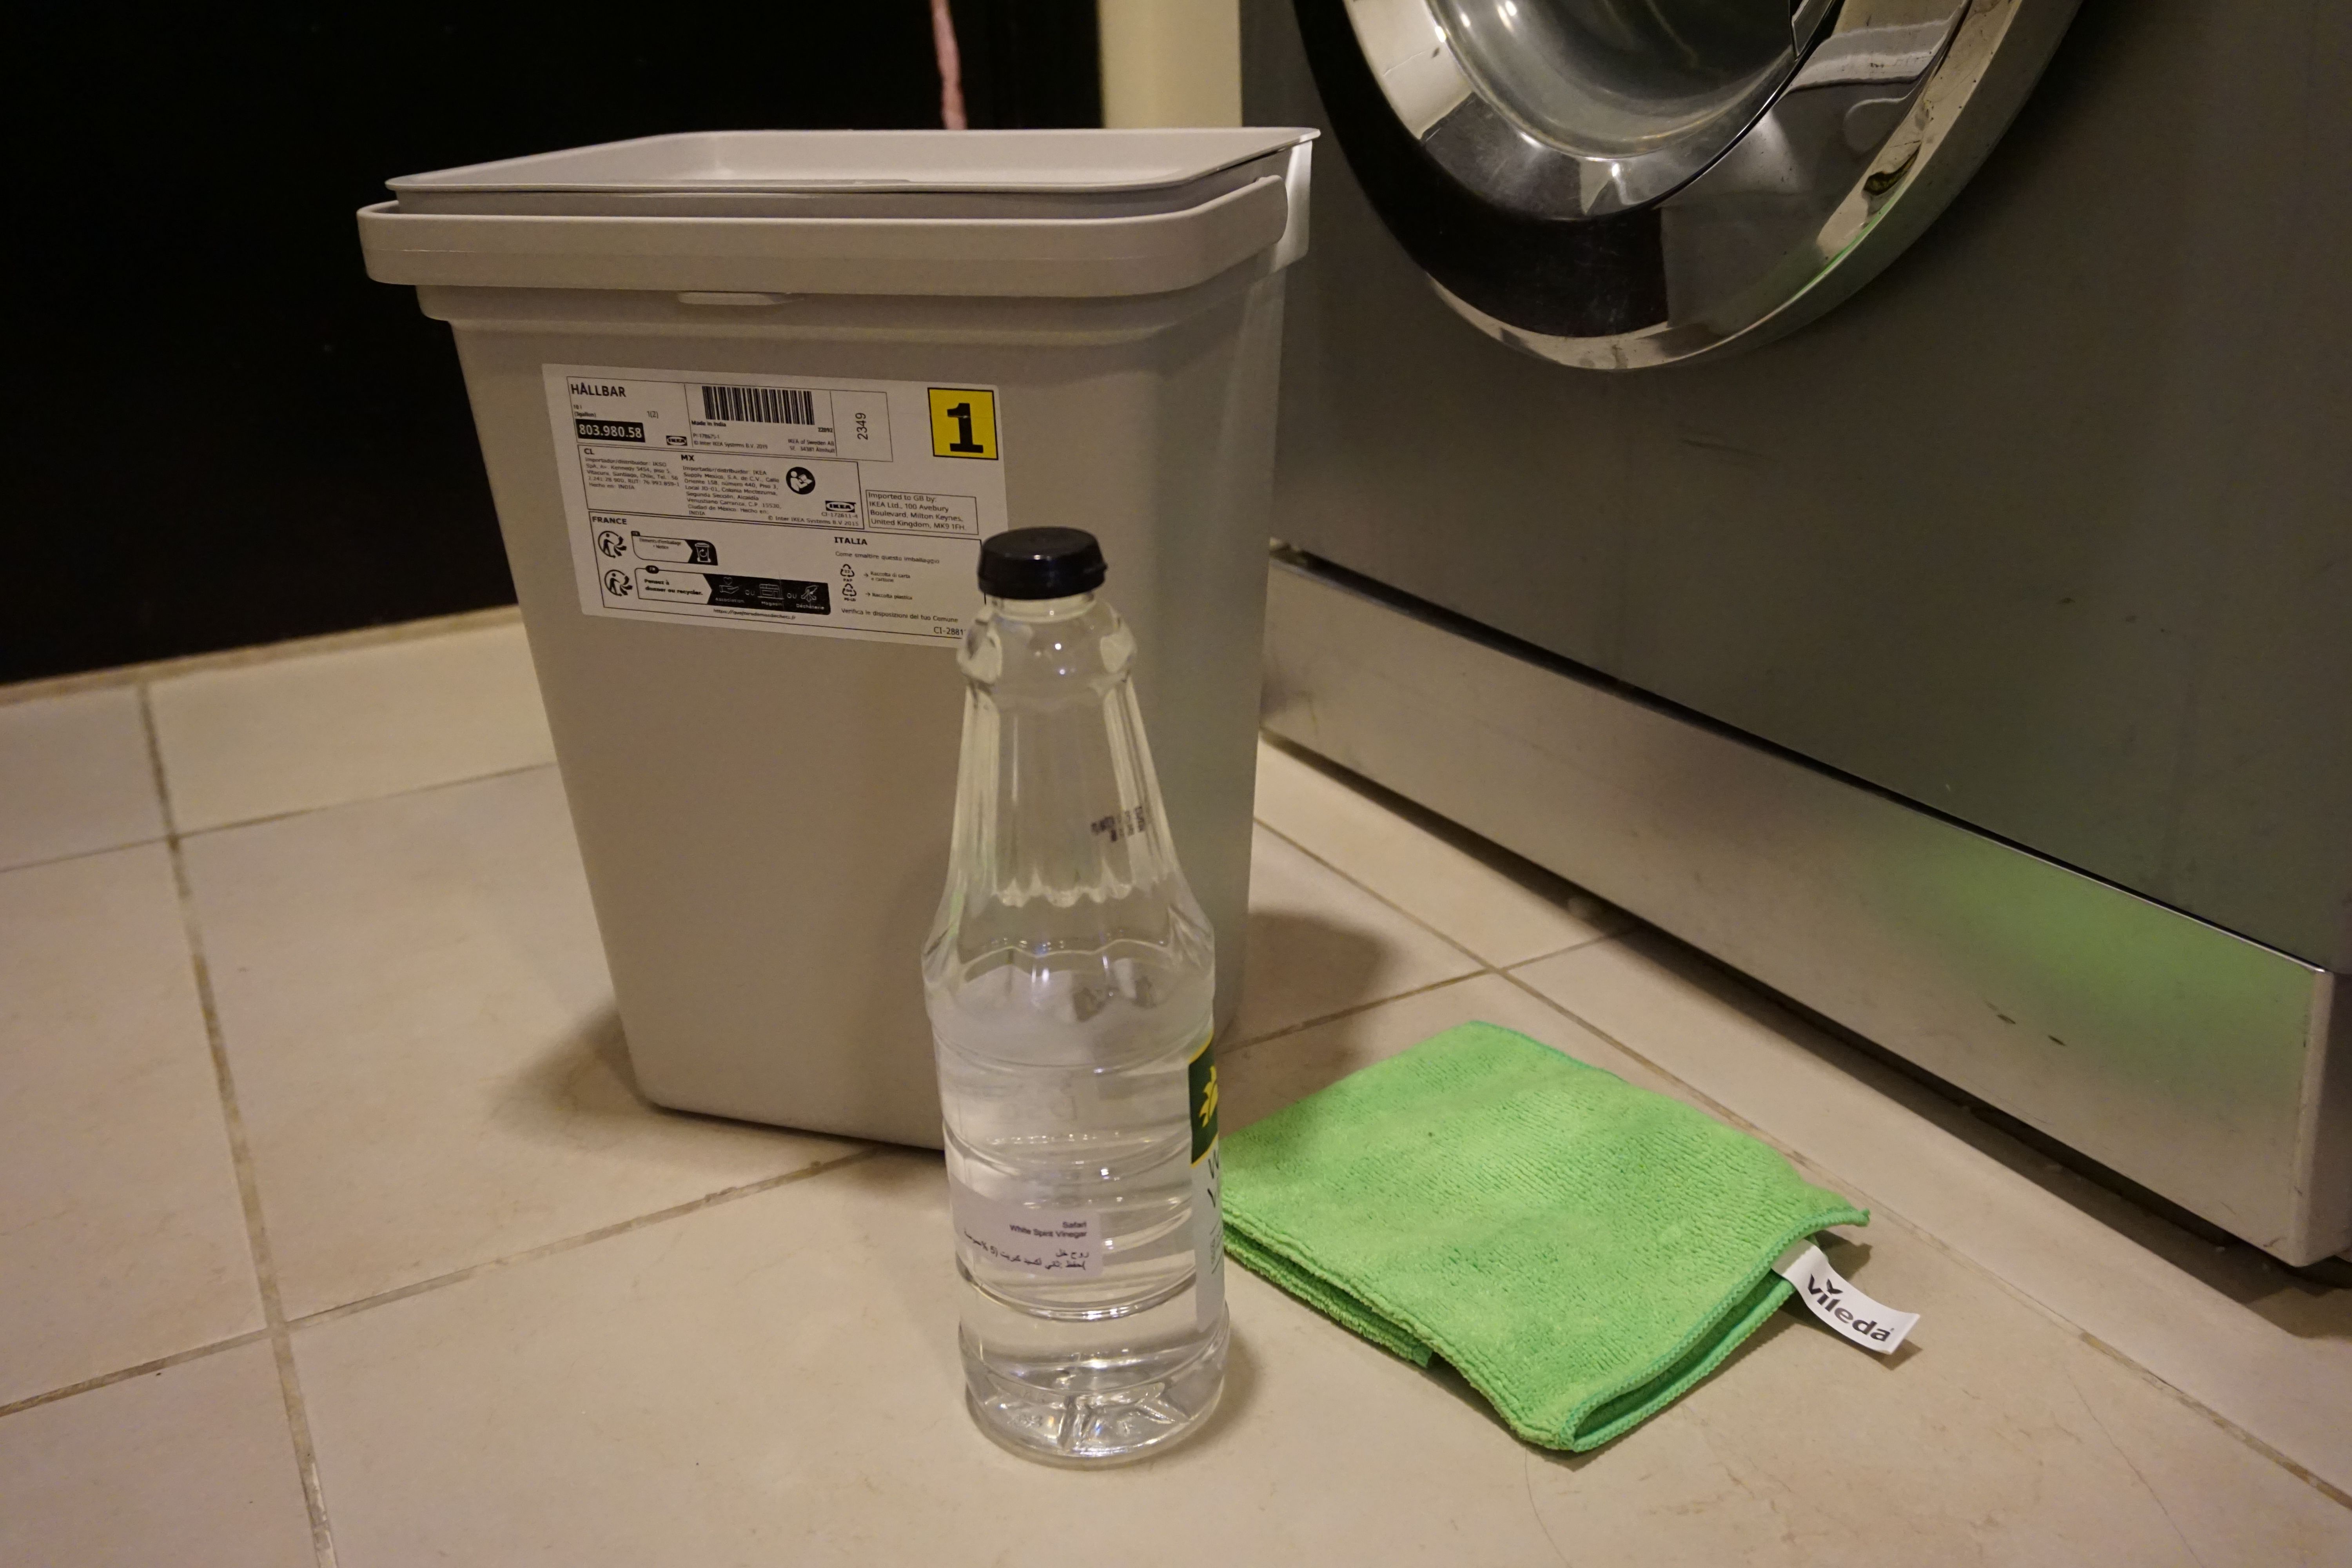 bildet viser eddik, en bøtte og klut, rens av vaskemaskin